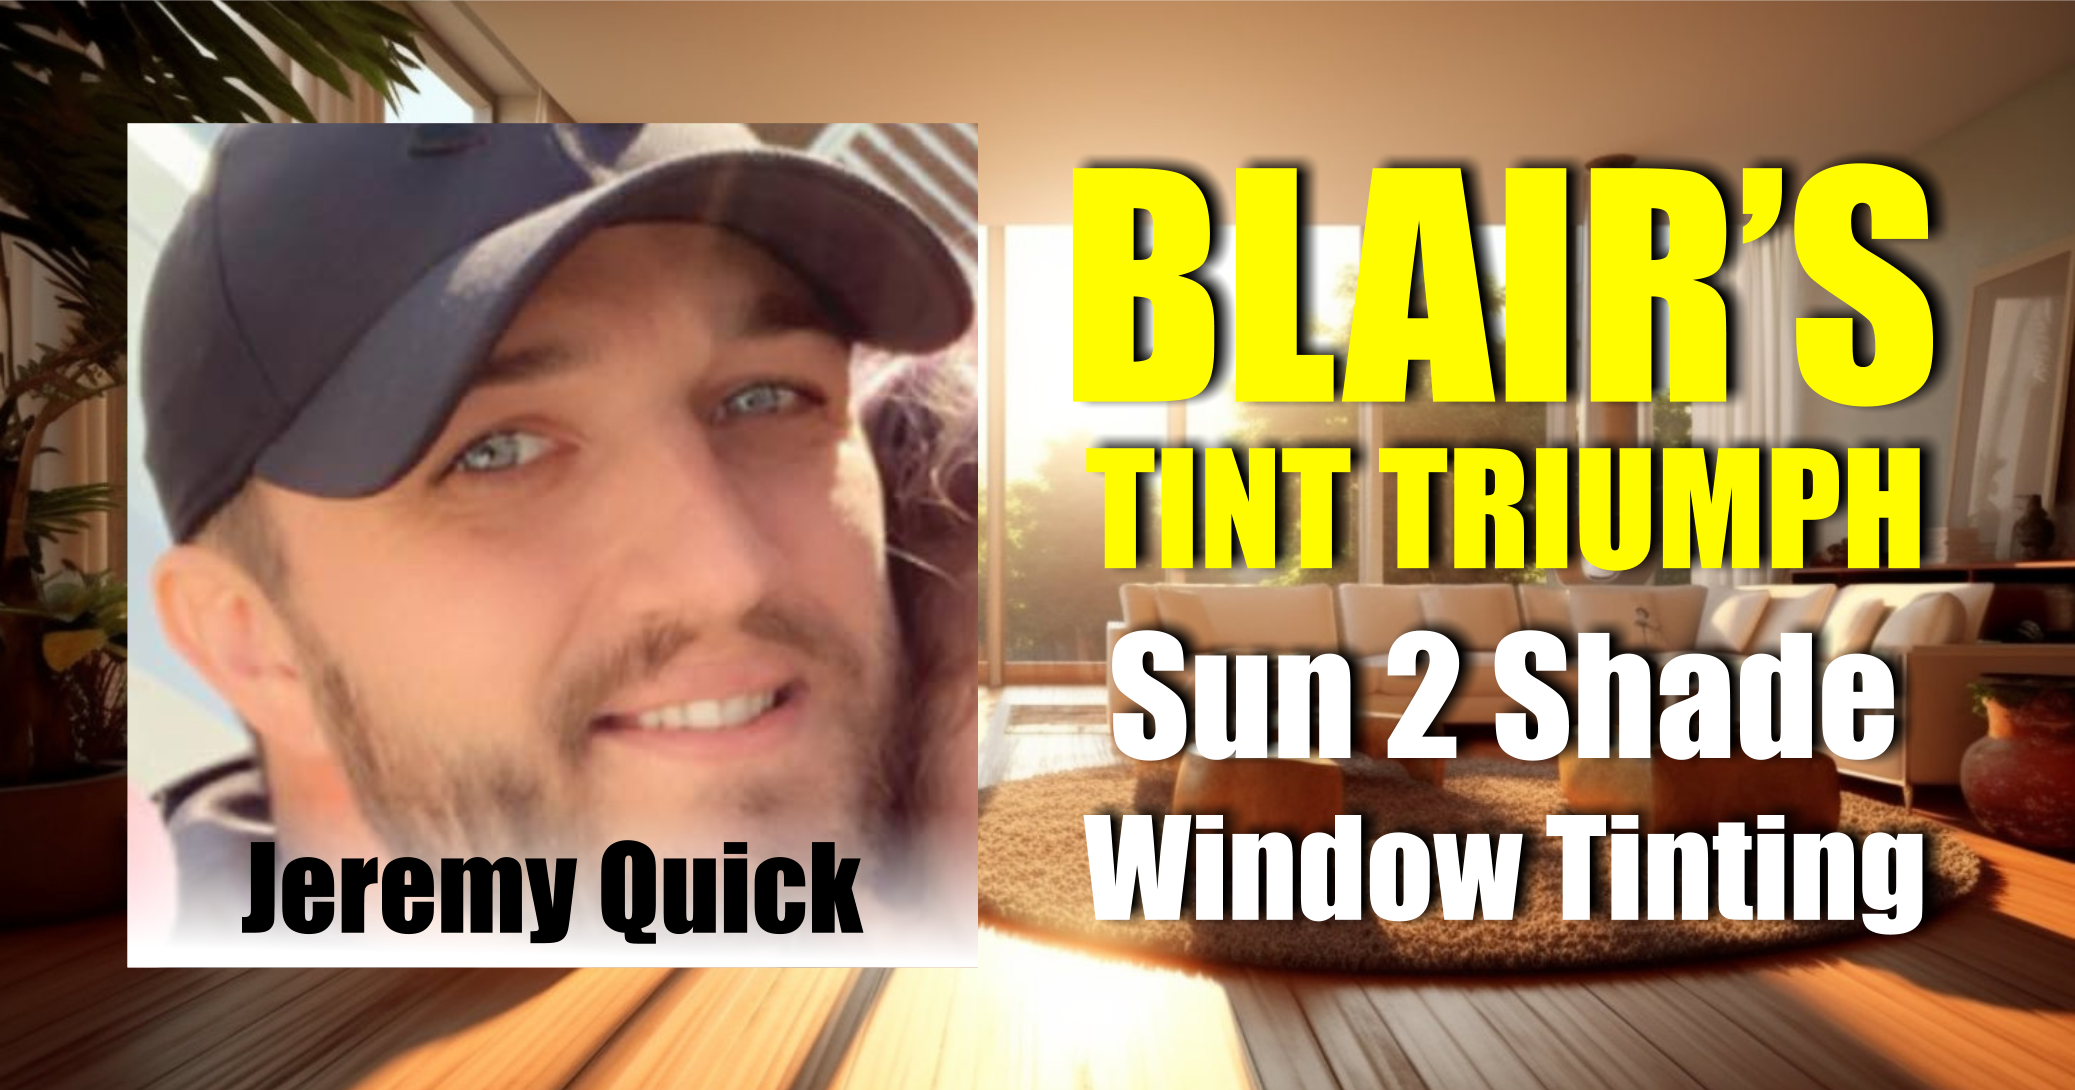 Blair Nebraska Window Tinting